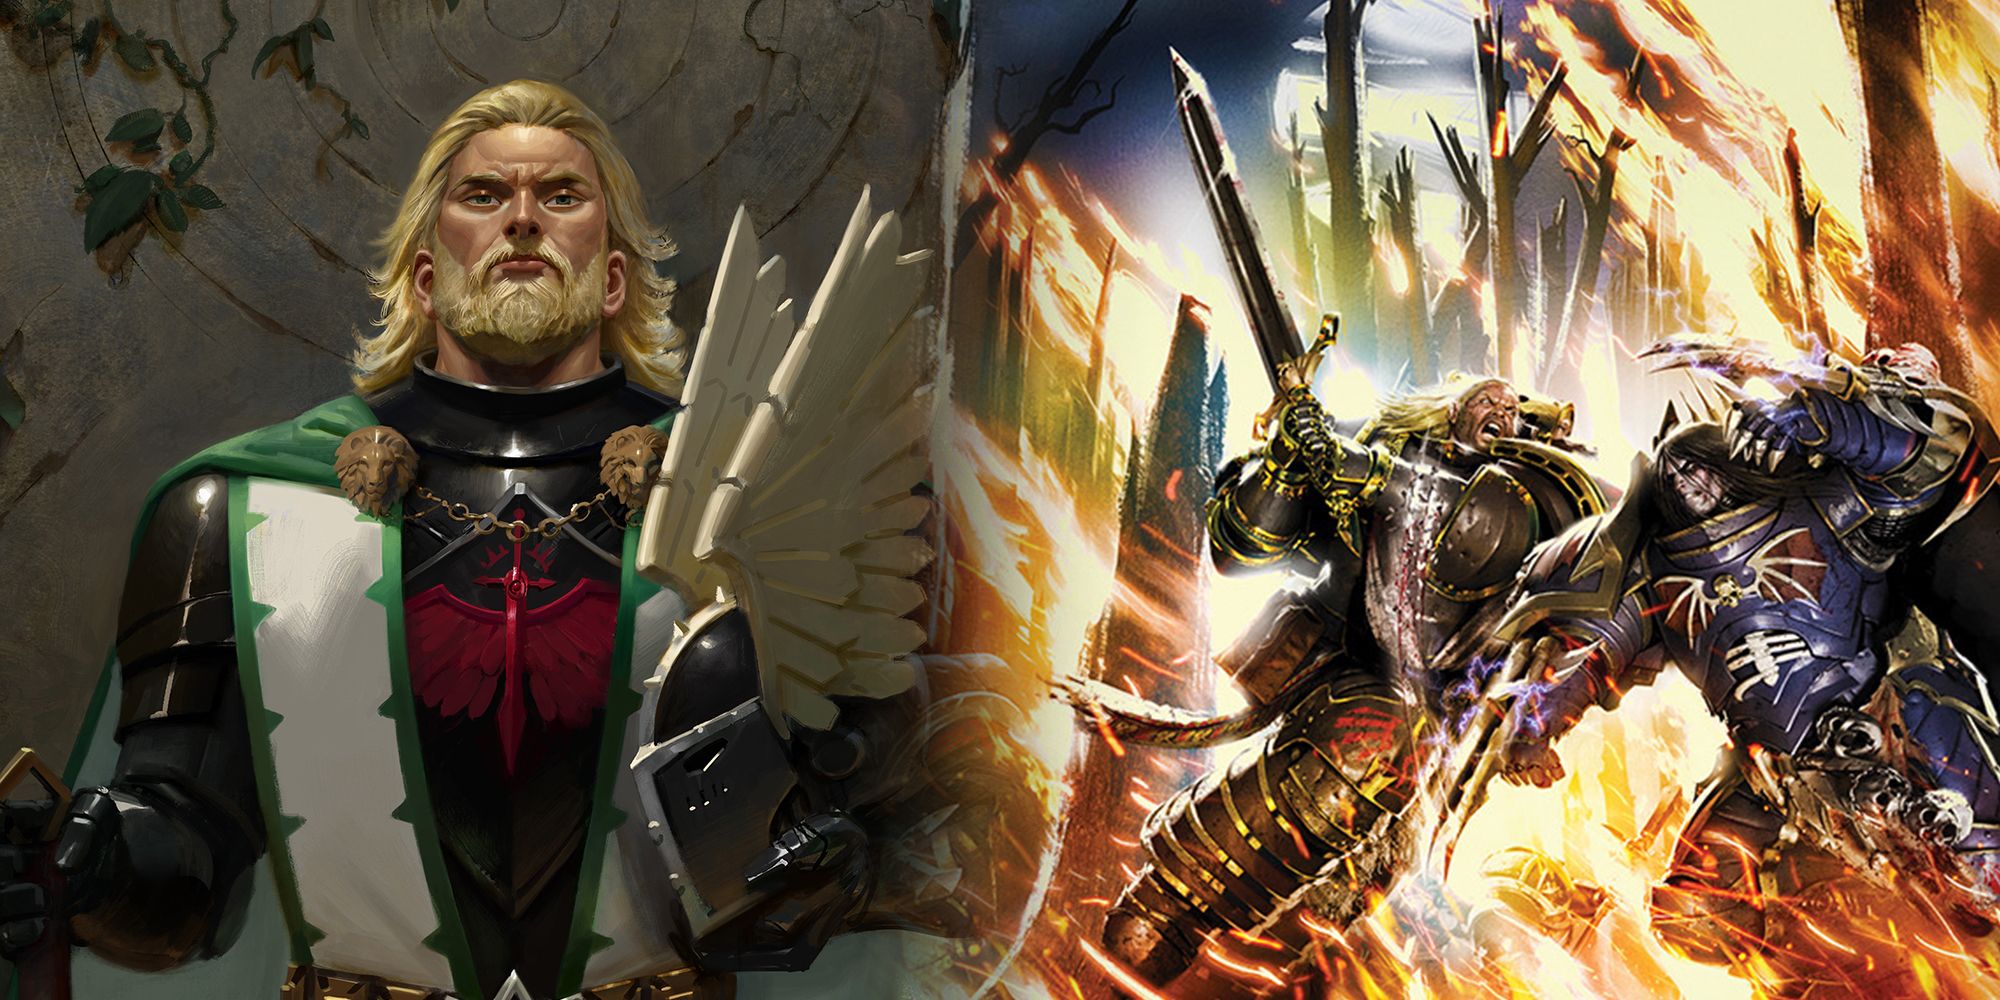 Warhammer 40k - Lion El'Johnson Fuori dall'Armatura e dall'aspetto di Cavaliere in Combattimento contro Konrad Curze